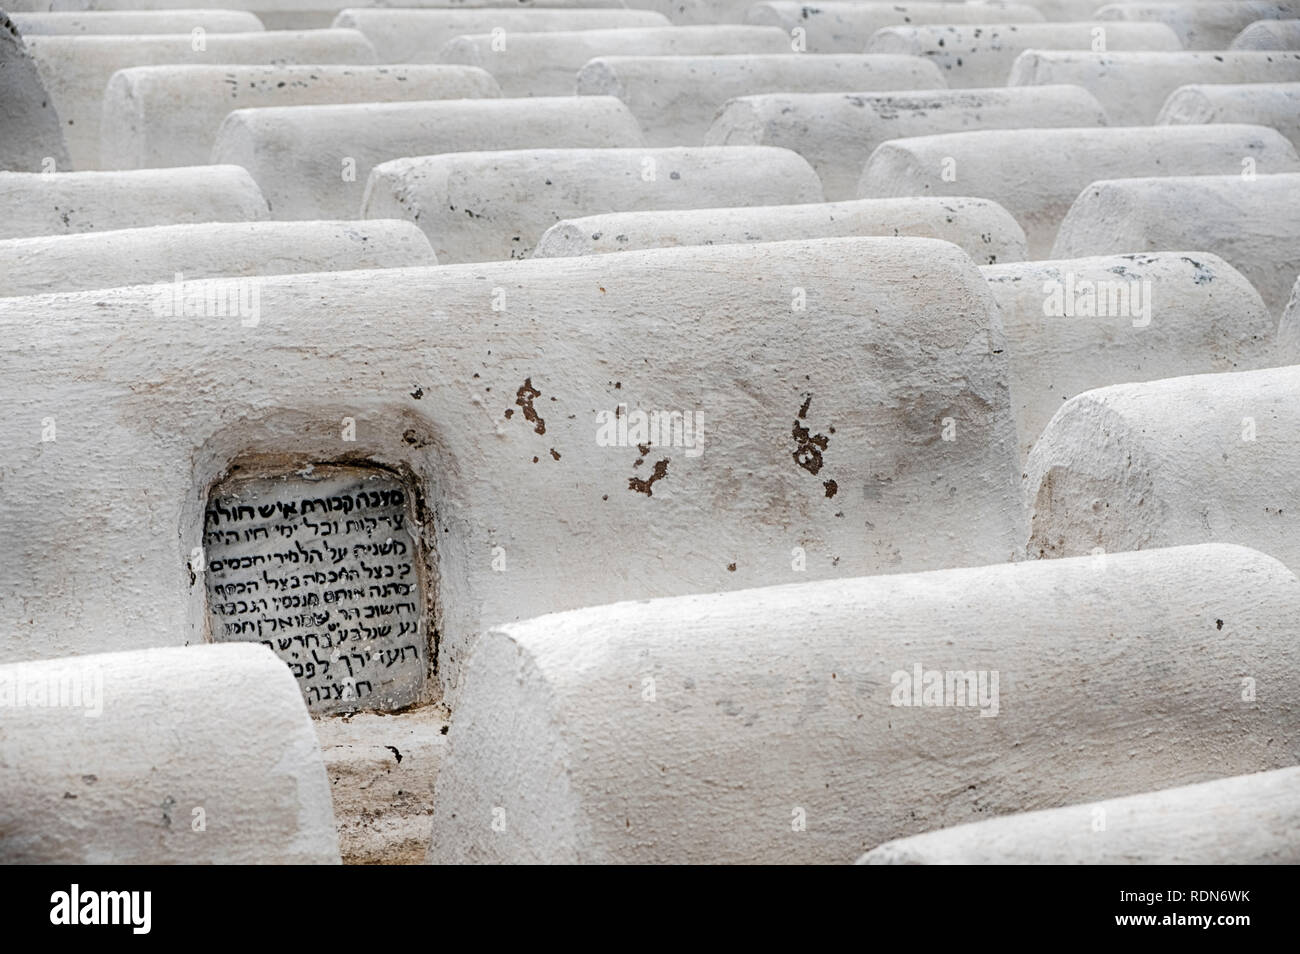 FES, MAROC - 19 octobre 2018 : Le cimetière juif à Fes, Maroc est rempli de rangs de tombes blanches. Banque D'Images